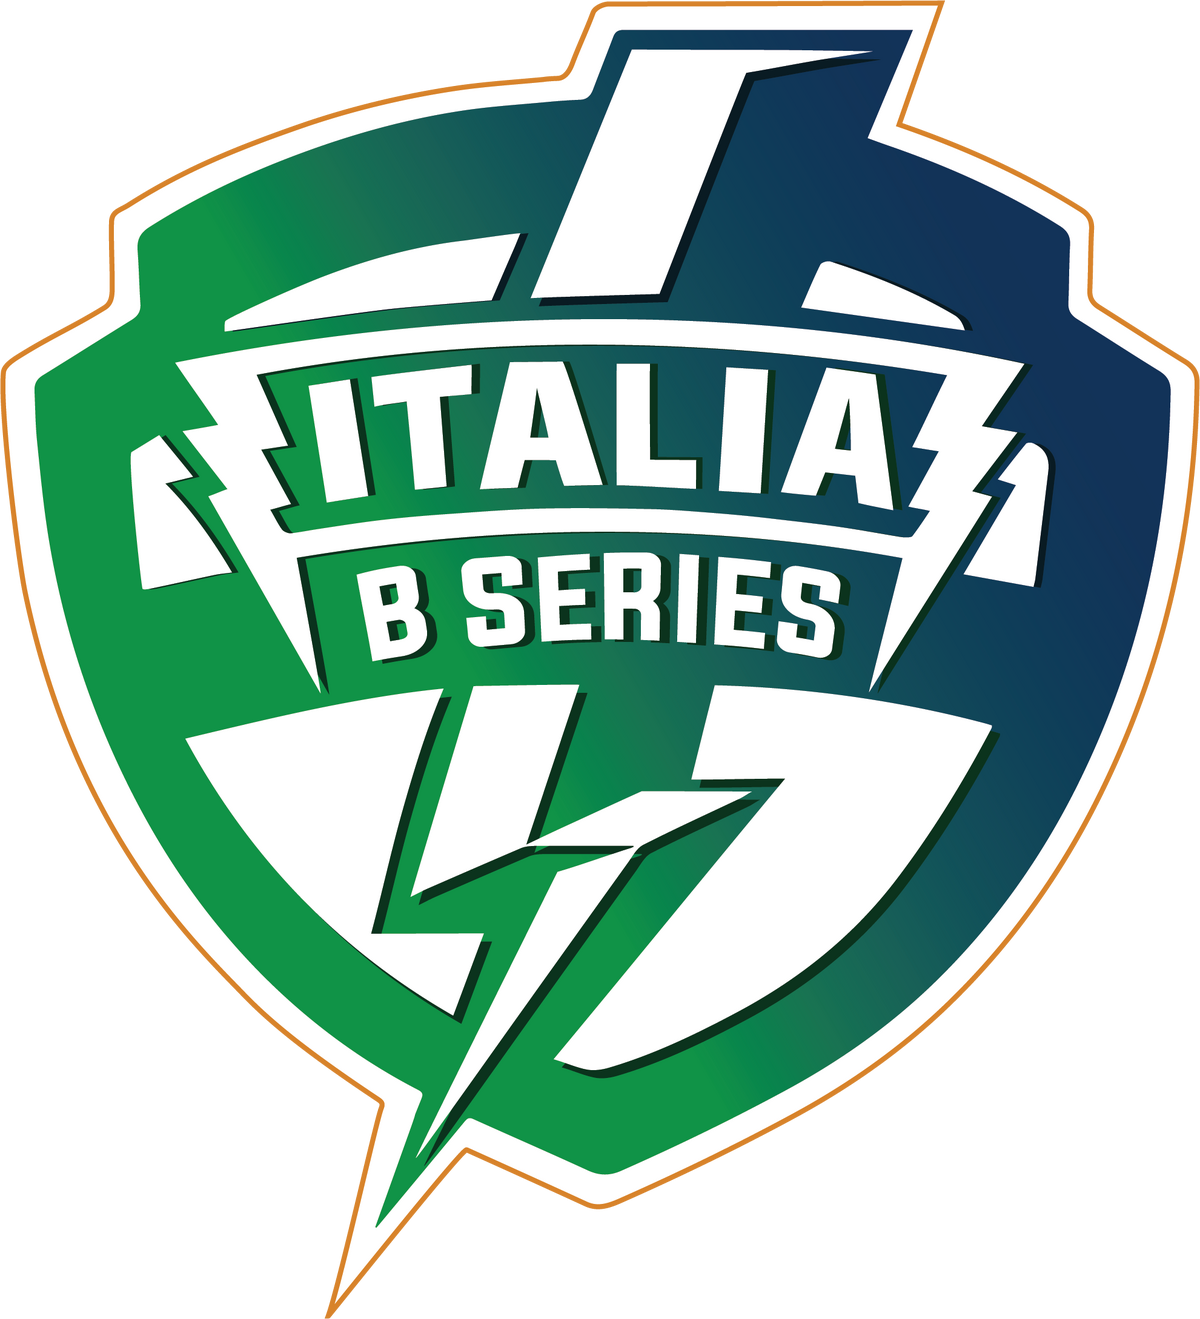 Smite Italia B Series - SMITE Esports Wiki